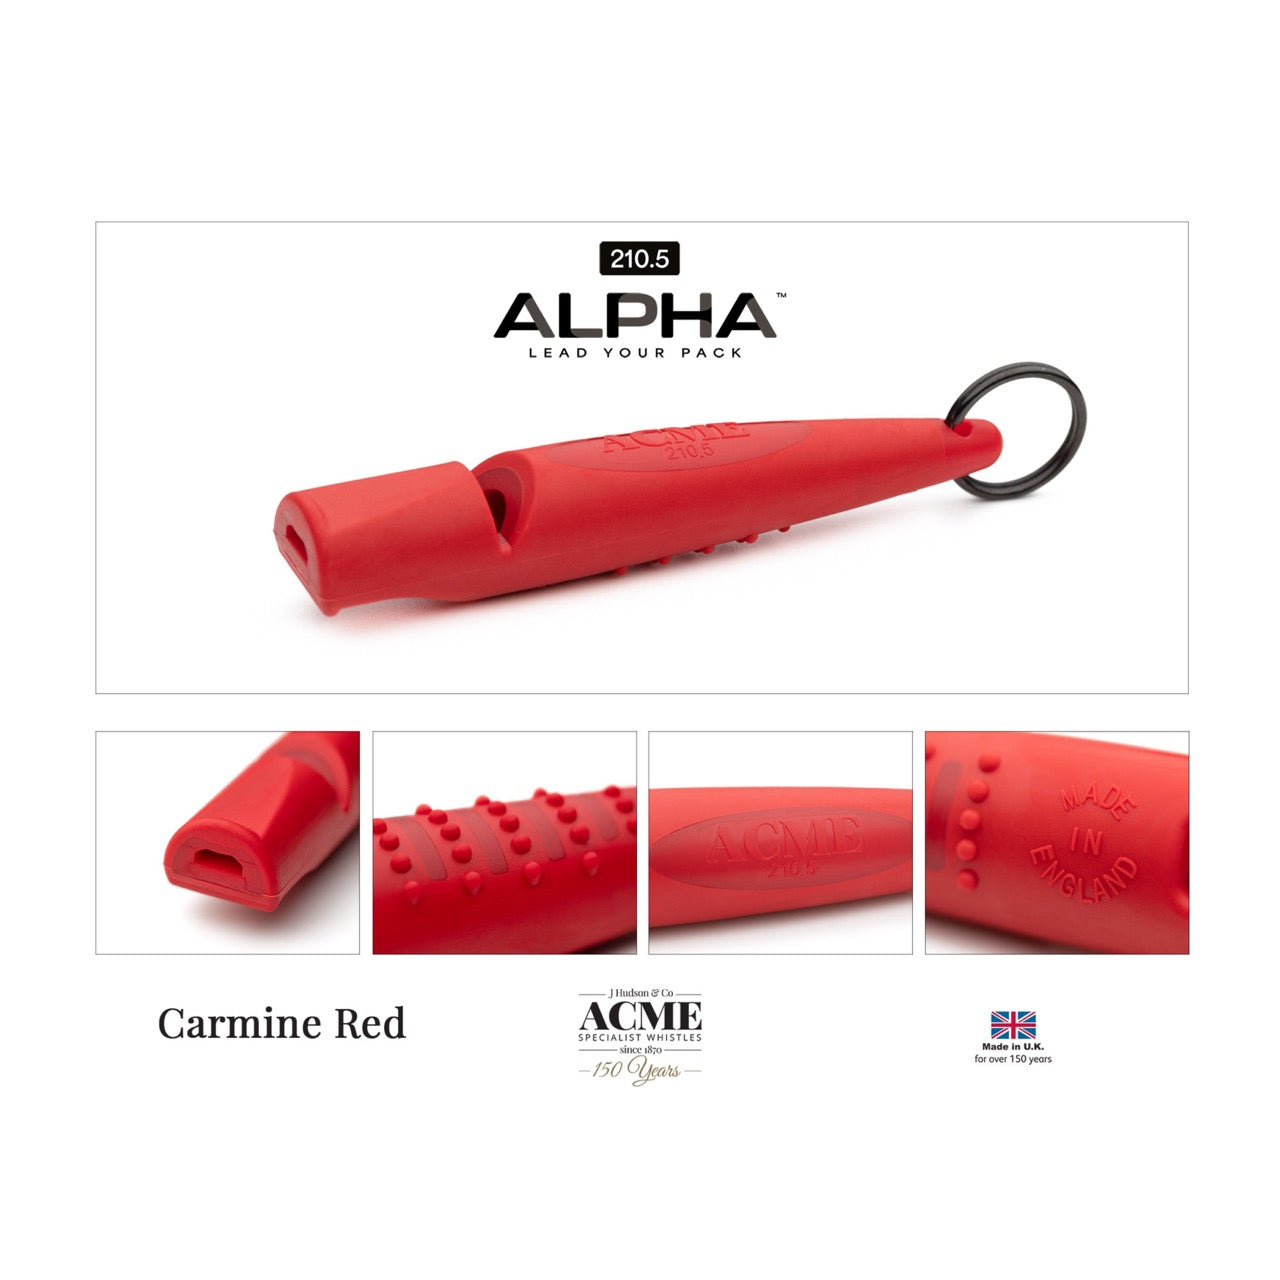 Acme Acme Alpha beste hondenfluit toonhoogte 210.5 carmine red